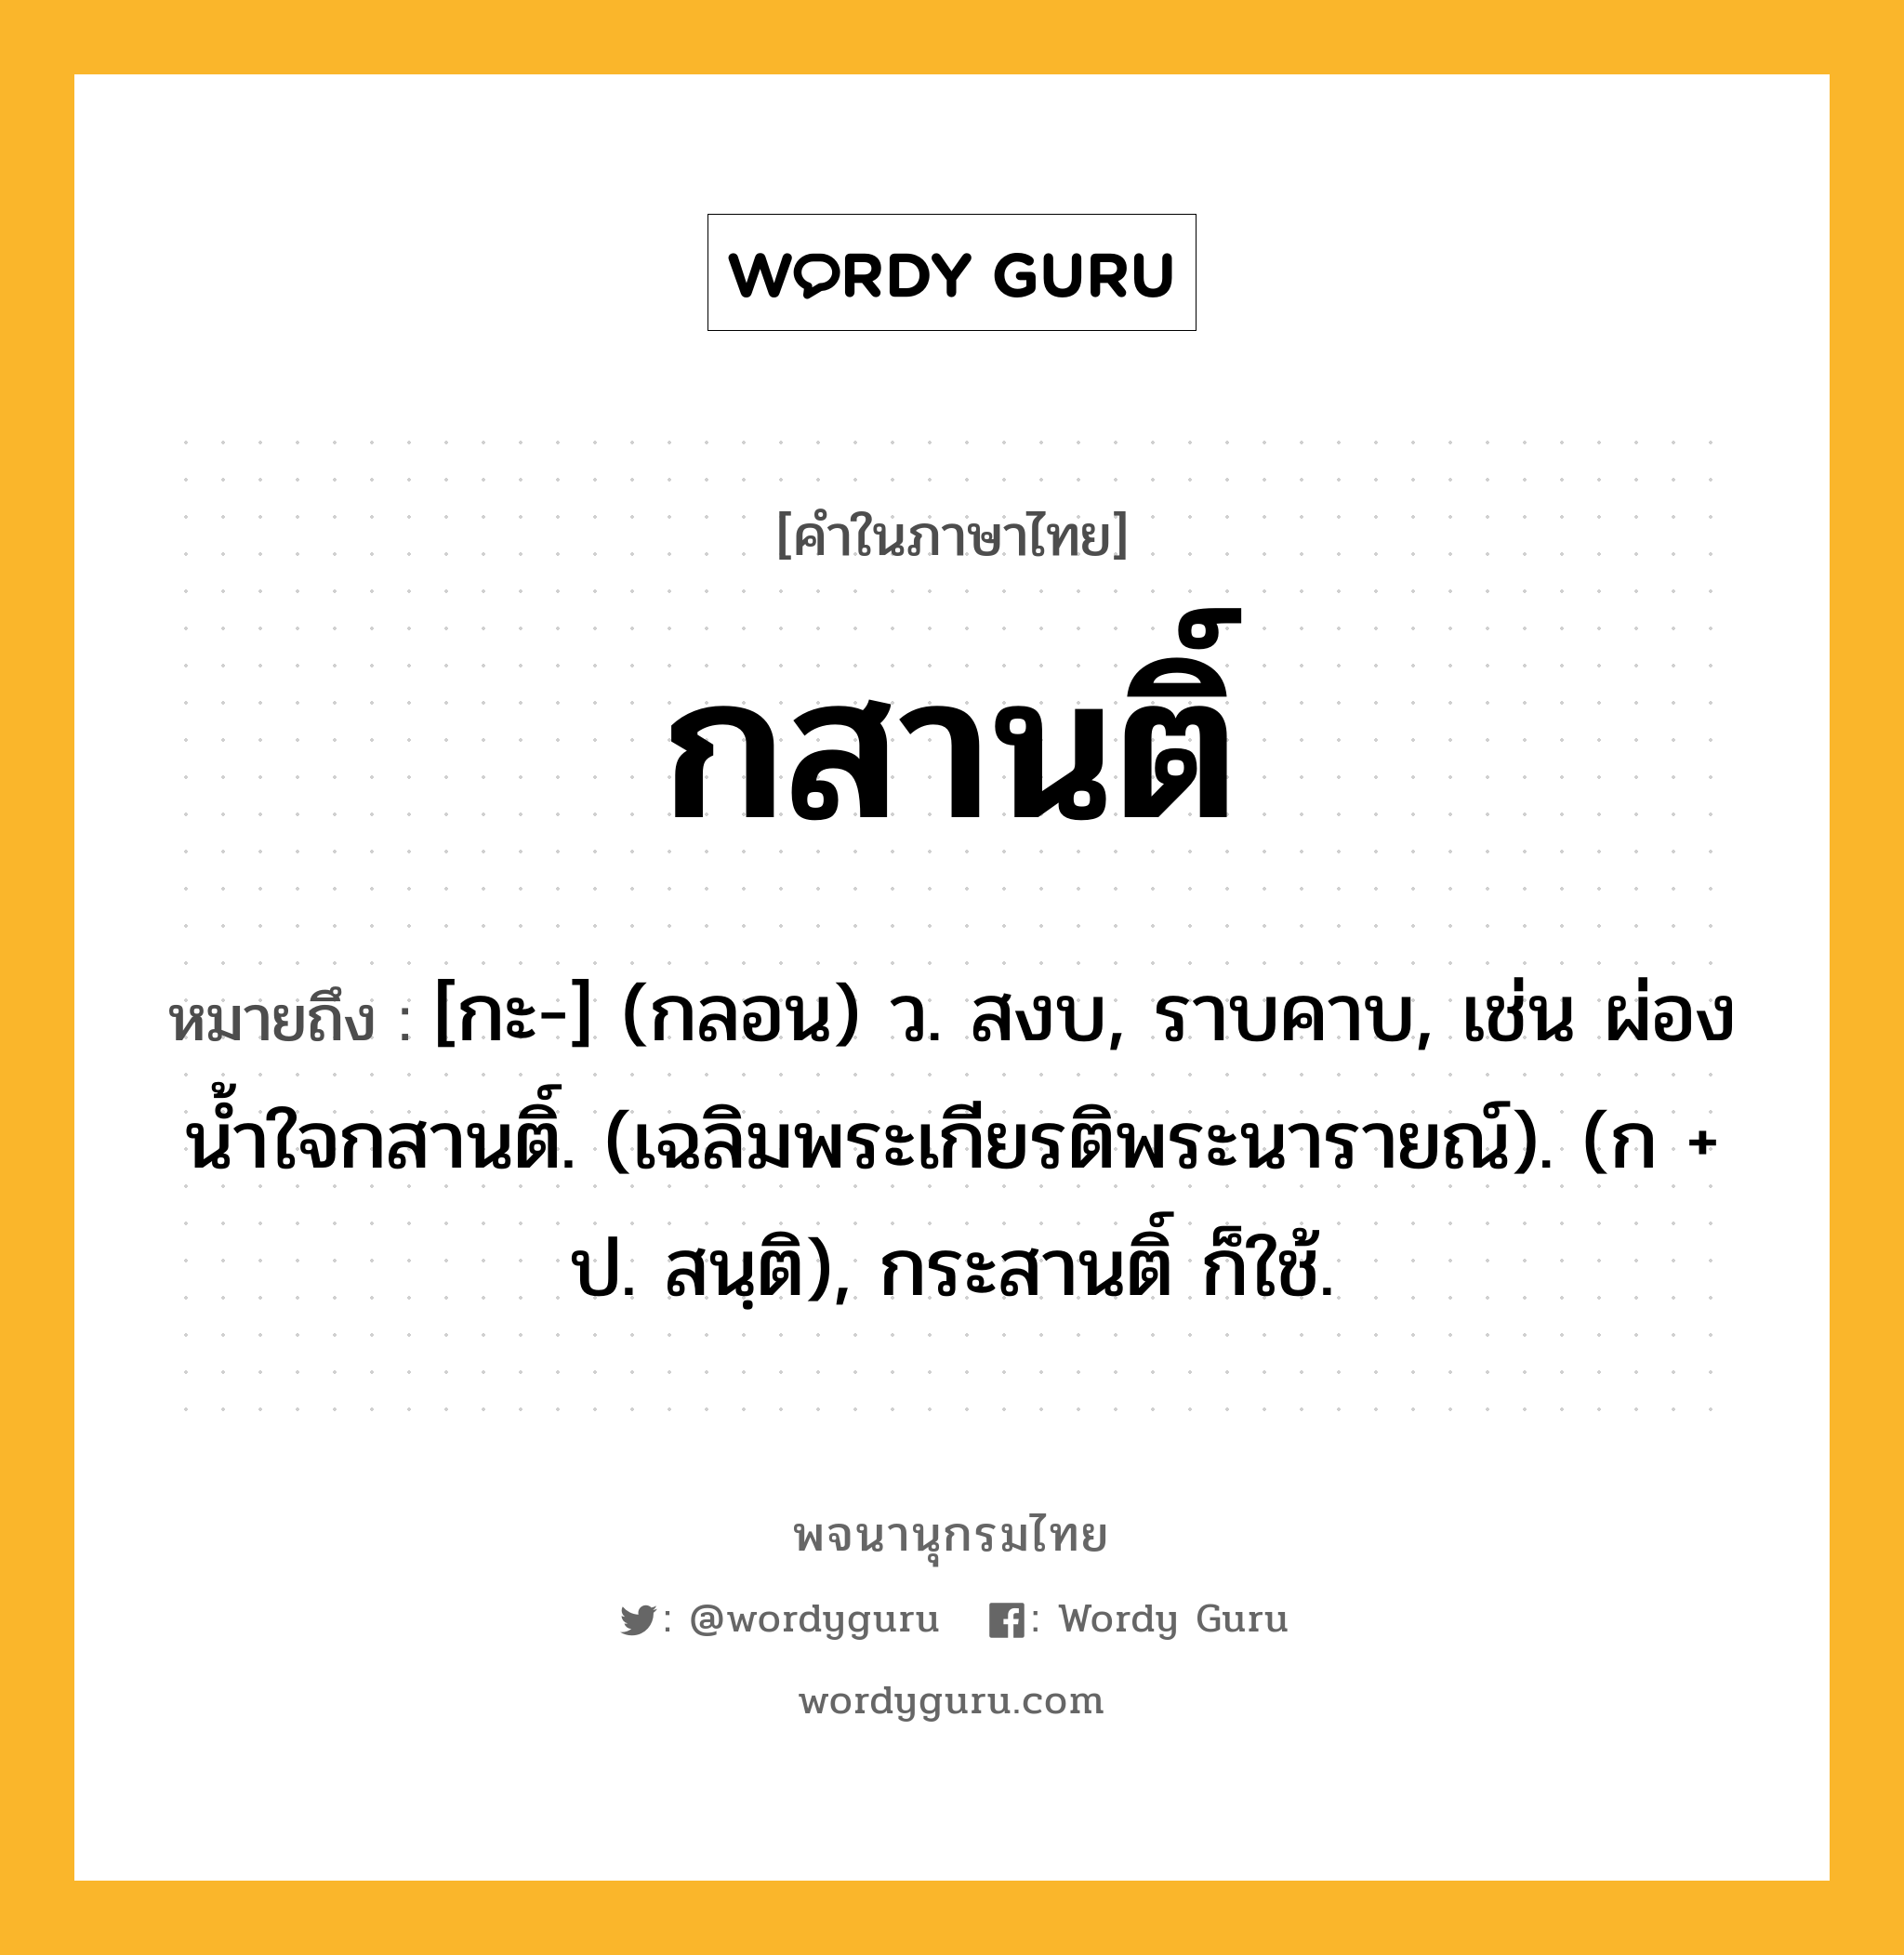 กสานติ์ ความหมาย หมายถึงอะไร?, คำในภาษาไทย กสานติ์ หมายถึง [กะ-] (กลอน) ว. สงบ, ราบคาบ, เช่น ผ่องนํ้าใจกสานติ์. (เฉลิมพระเกียรติพระนารายณ์). (ก + ป. สนฺติ), กระสานติ์ ก็ใช้.